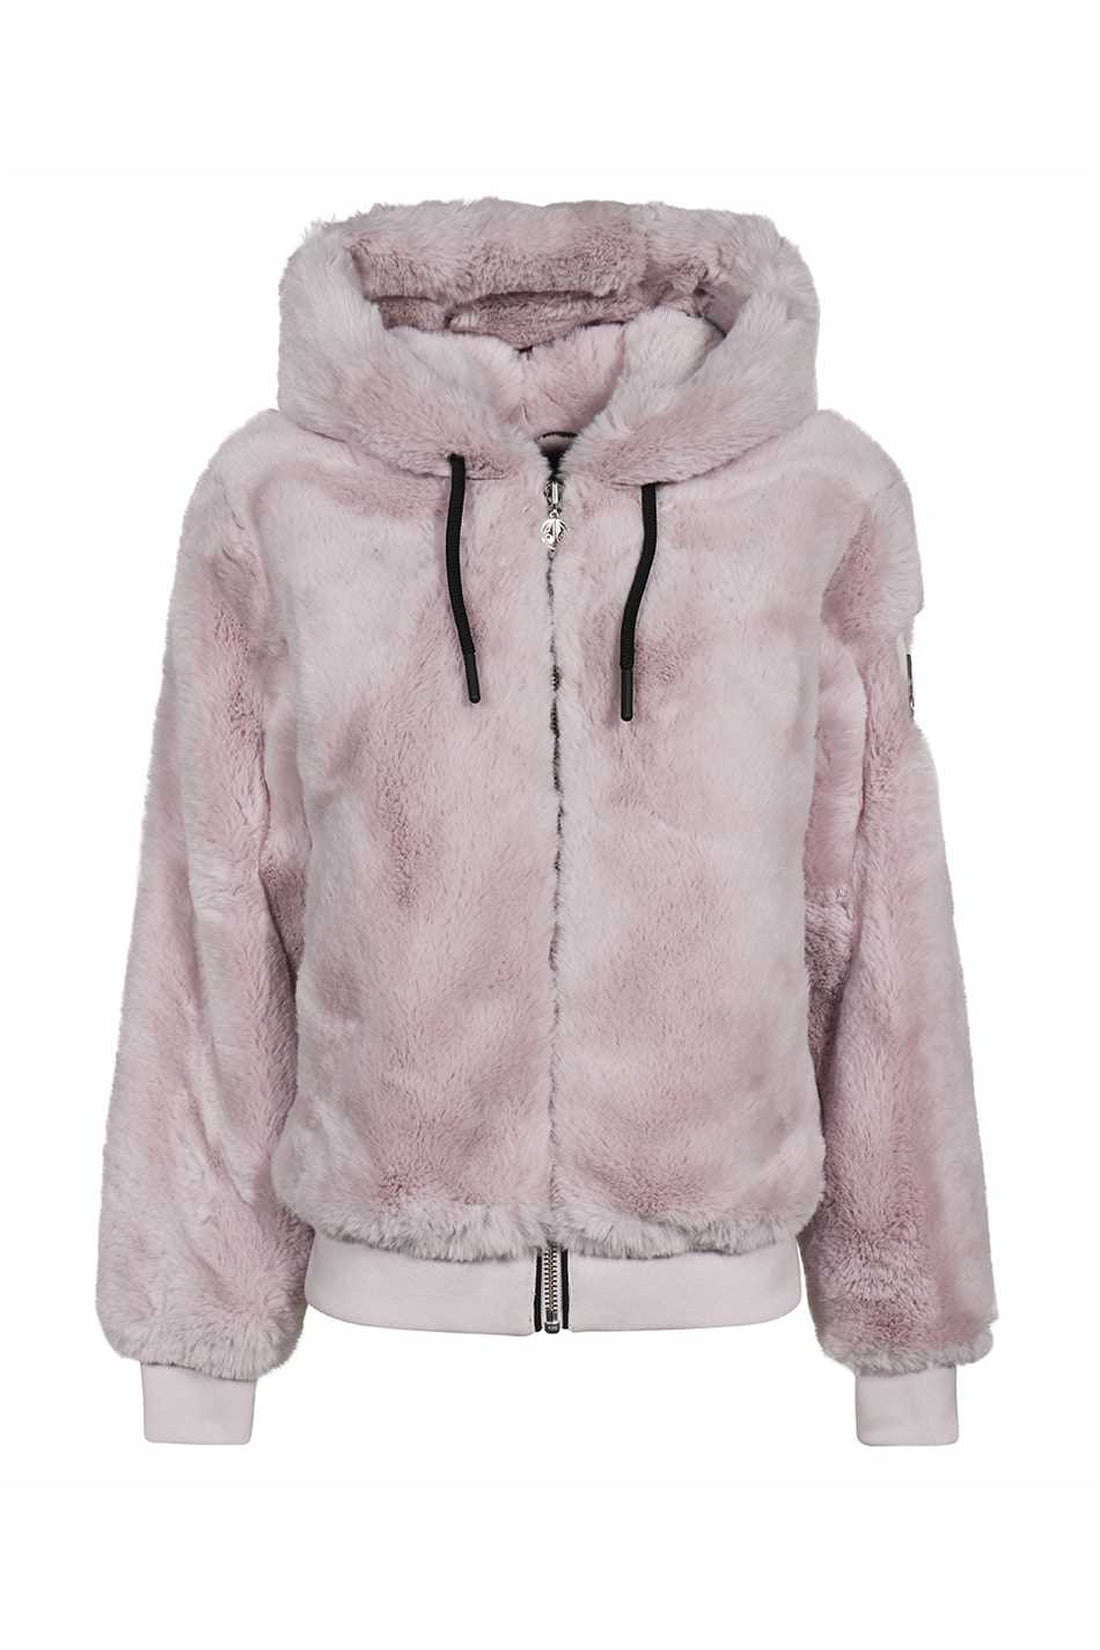 Moose Knuckles-OUTLET-SALE-Bunny faux fur jacket-ARCHIVIST